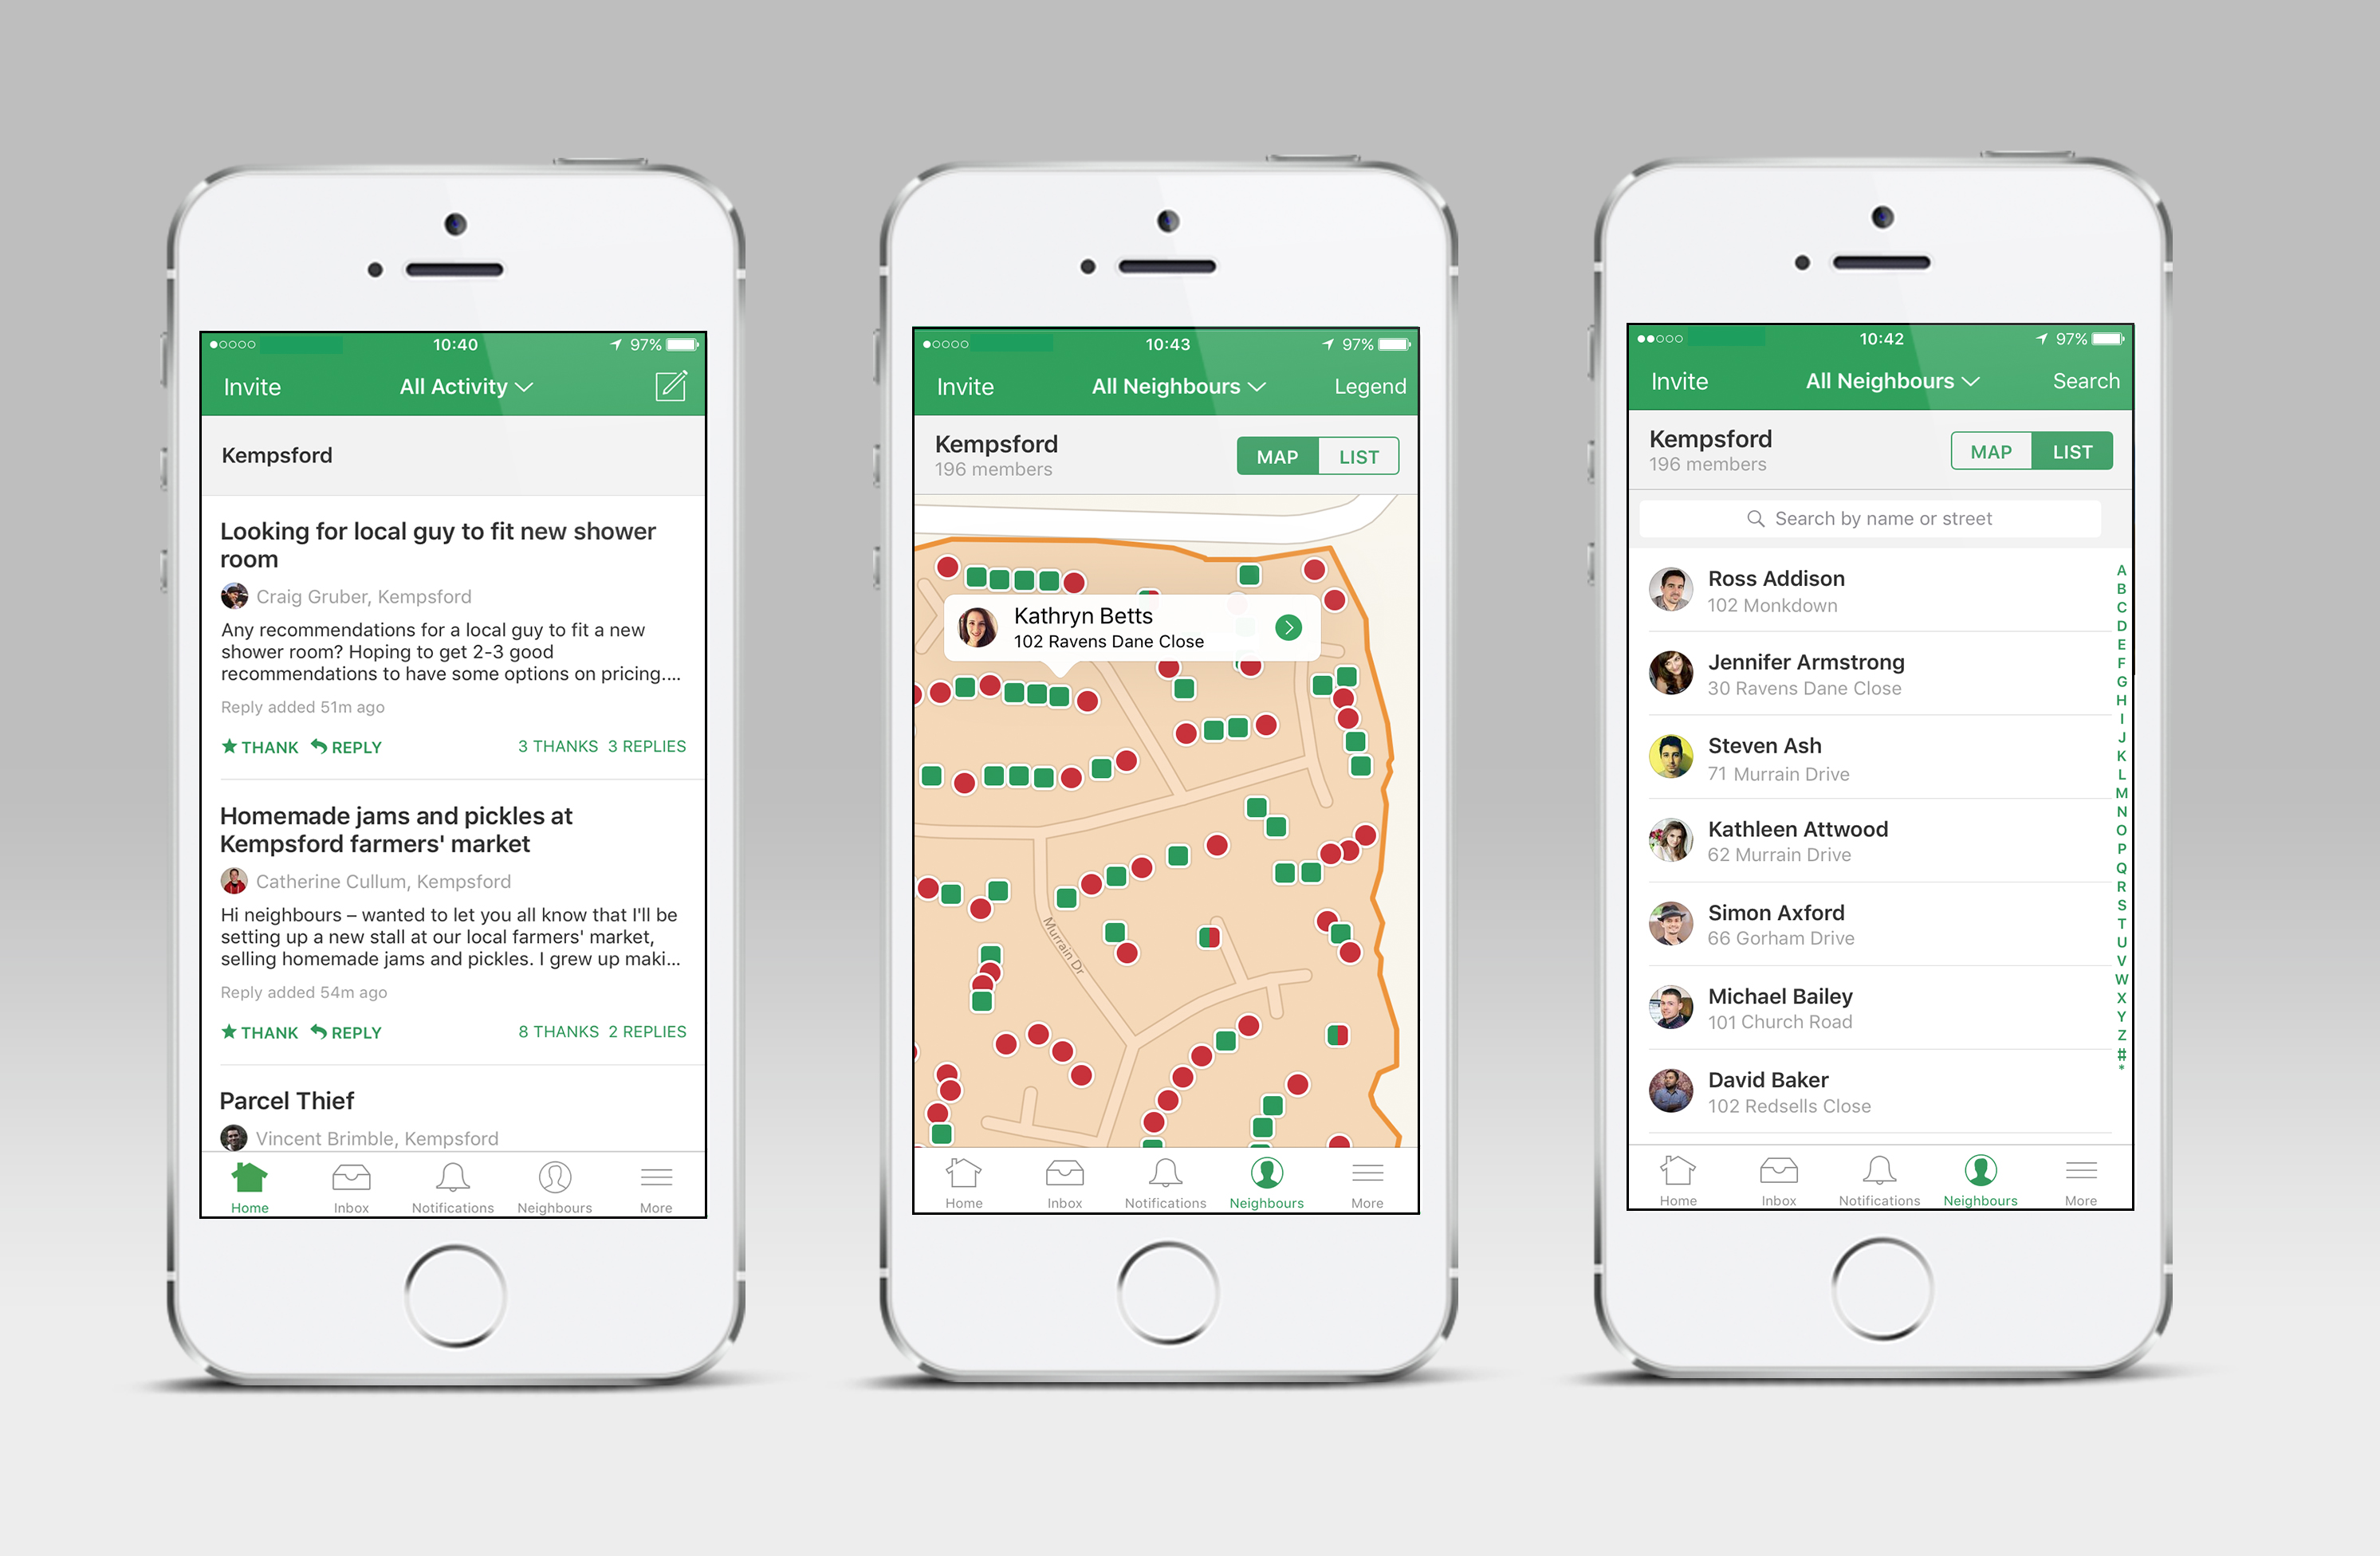 Nextdoor to acquire “assets” of UK local social network Streetlife |  TechCrunch